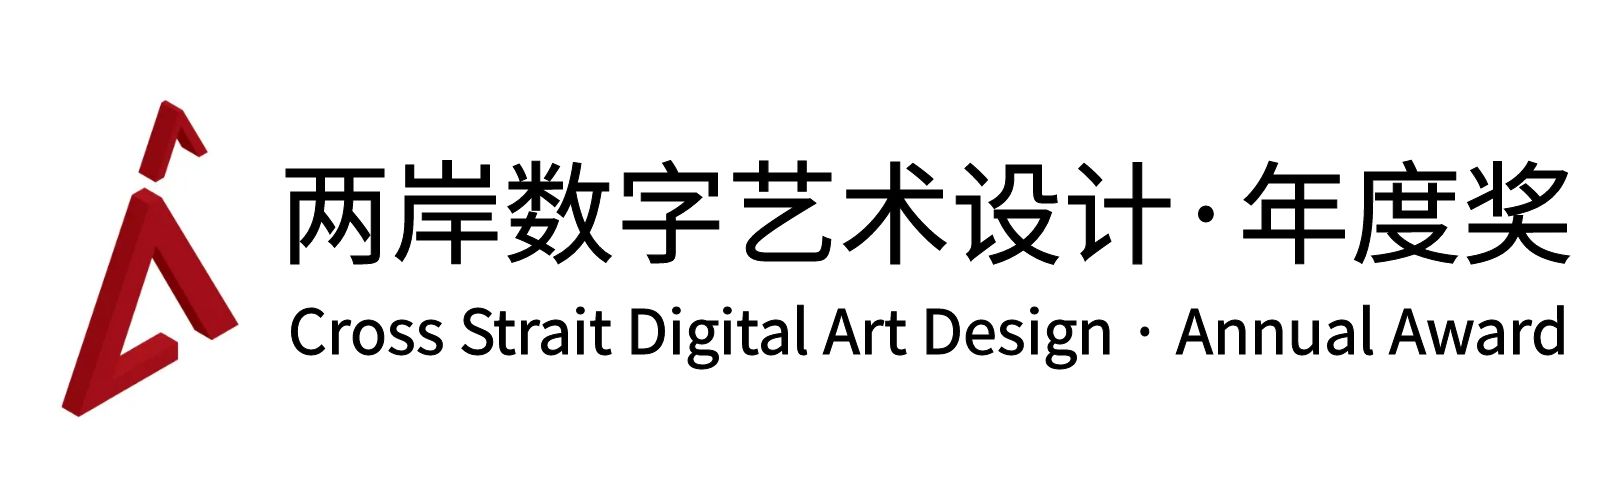 两岸国际艺术设计·年度奖·两岸数字艺术设计大赛